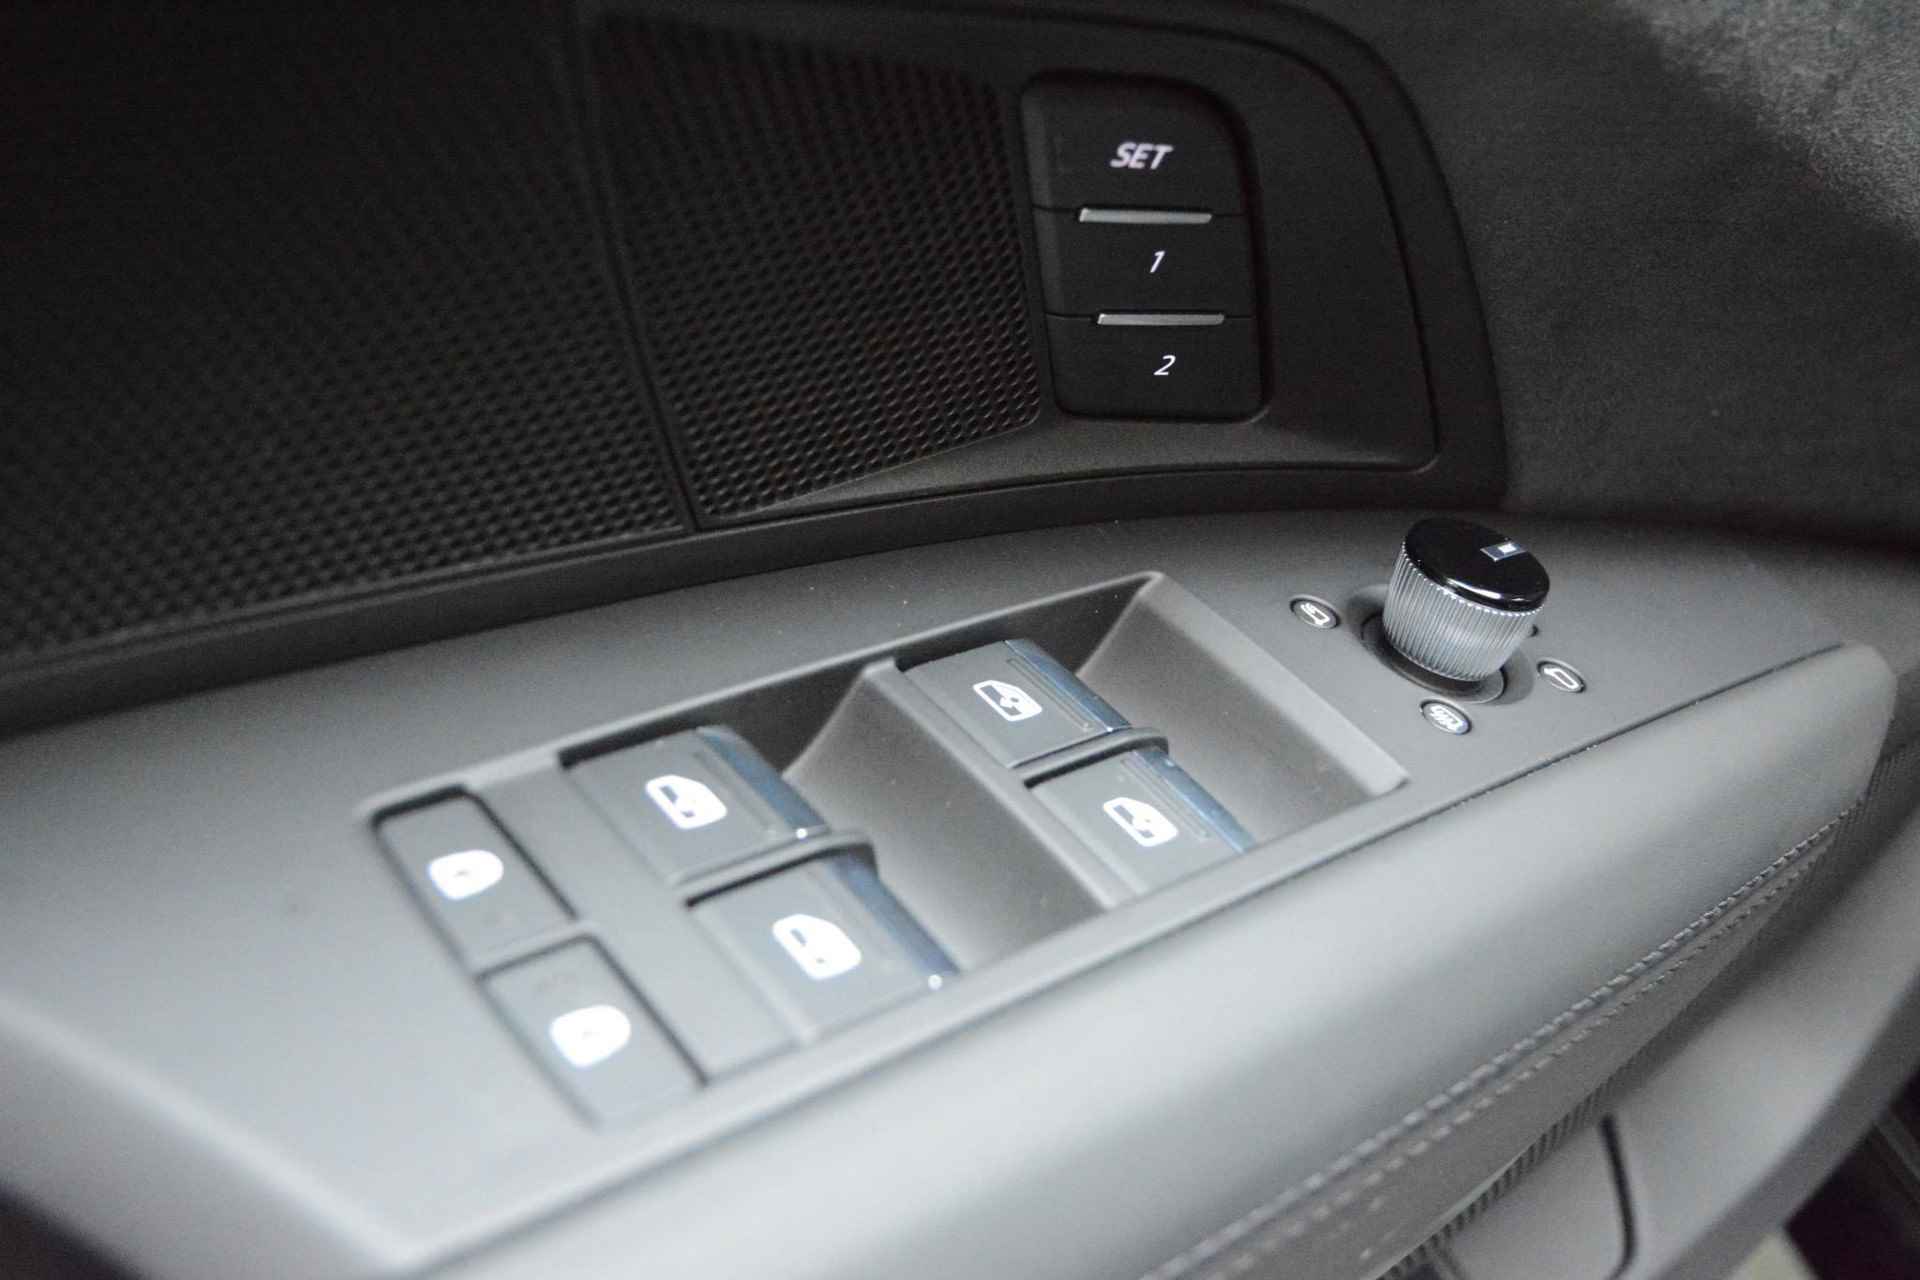 Audi e-tron GT GT Competition 93 kWh 476 PK | Nieuw | NU VAN € 143.900,00 VOOR € 123.900,00!!!! | UNIEKE KLEUR TIEFGRUN ENIGE IN NL!!! | Navigatie | Maxtrix-Laser koplampen | 360 camera | Autonome parkeerfunctie | Dynamische vierwielbesturing | Dodehoek detectie | Glazen panoramadak | Head-up display | Dynamiekpakket plus | Audi virtual cockpit plus | Stoelverwarming voor en achter | Lichtpakket plus ambient light | Optiekpakket zwart plus - 28/30